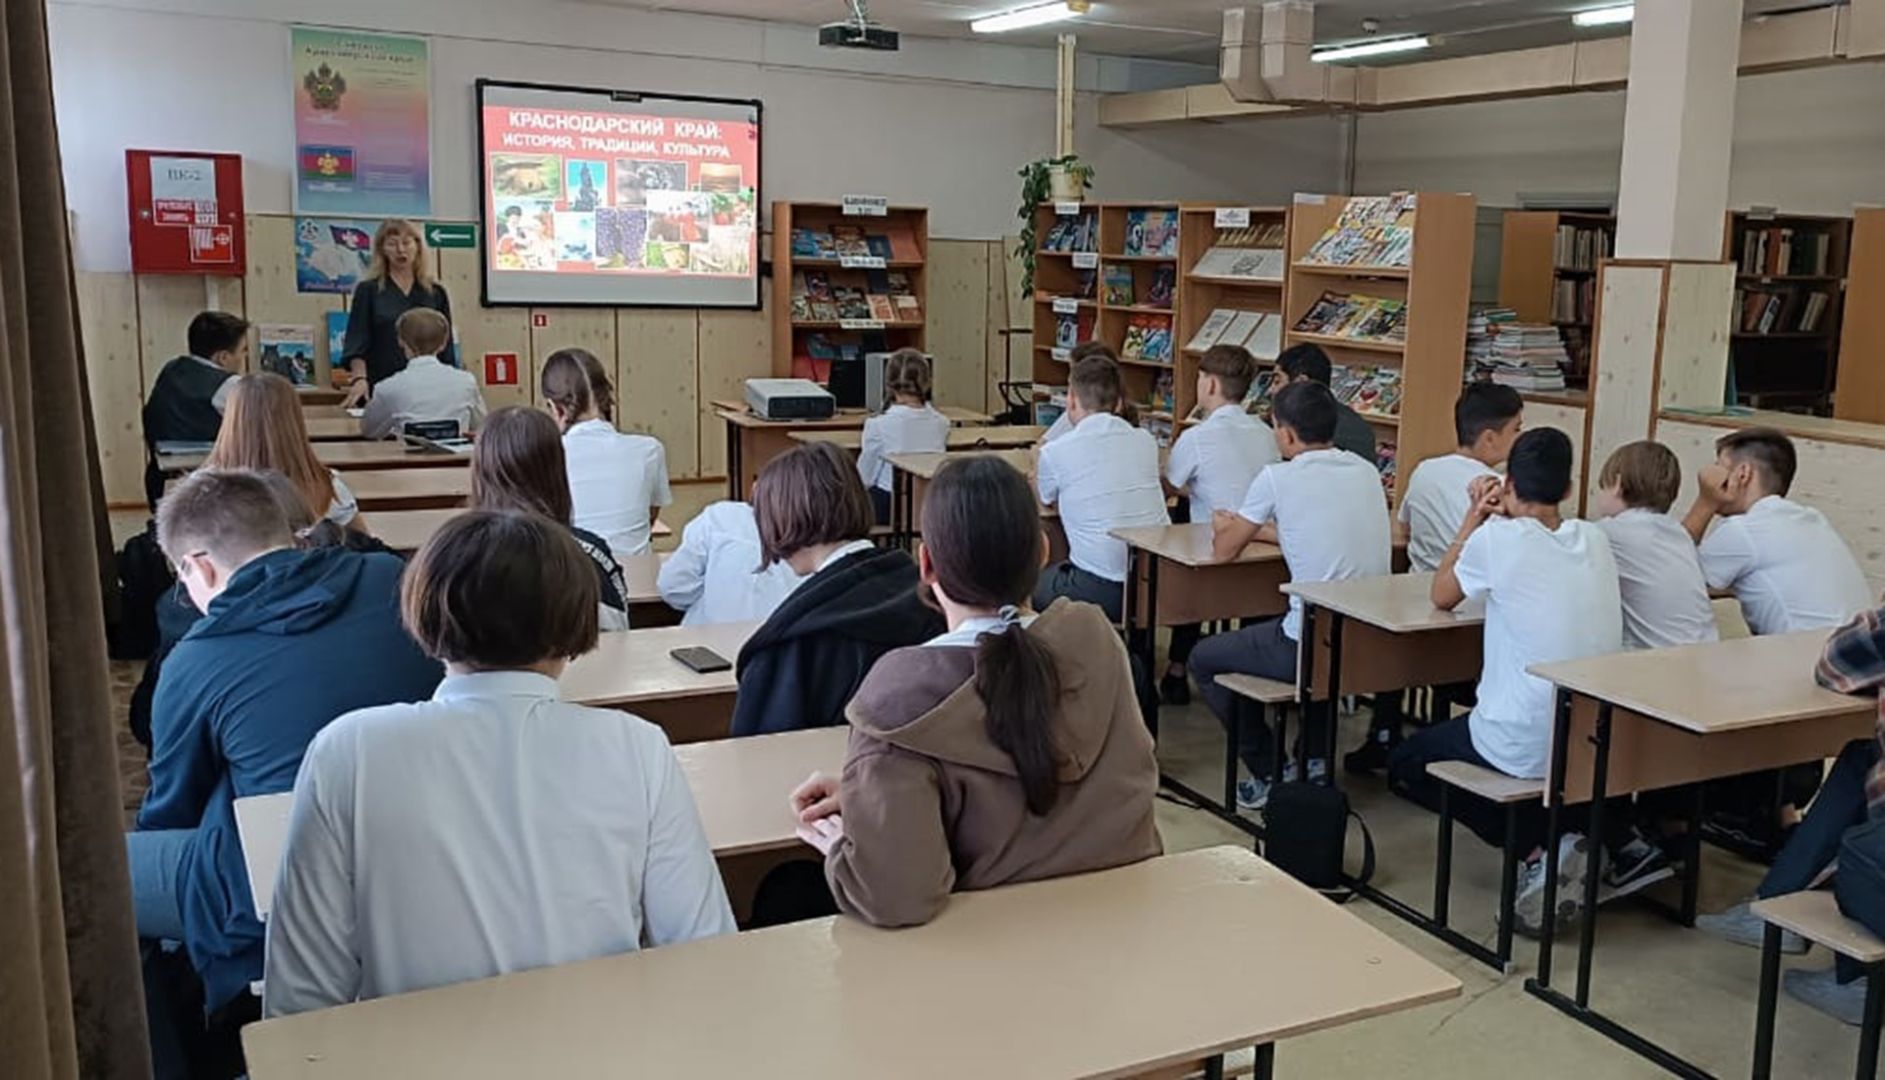 Белореченская юношеская библиотека организовала информационный урок к 86-летию края